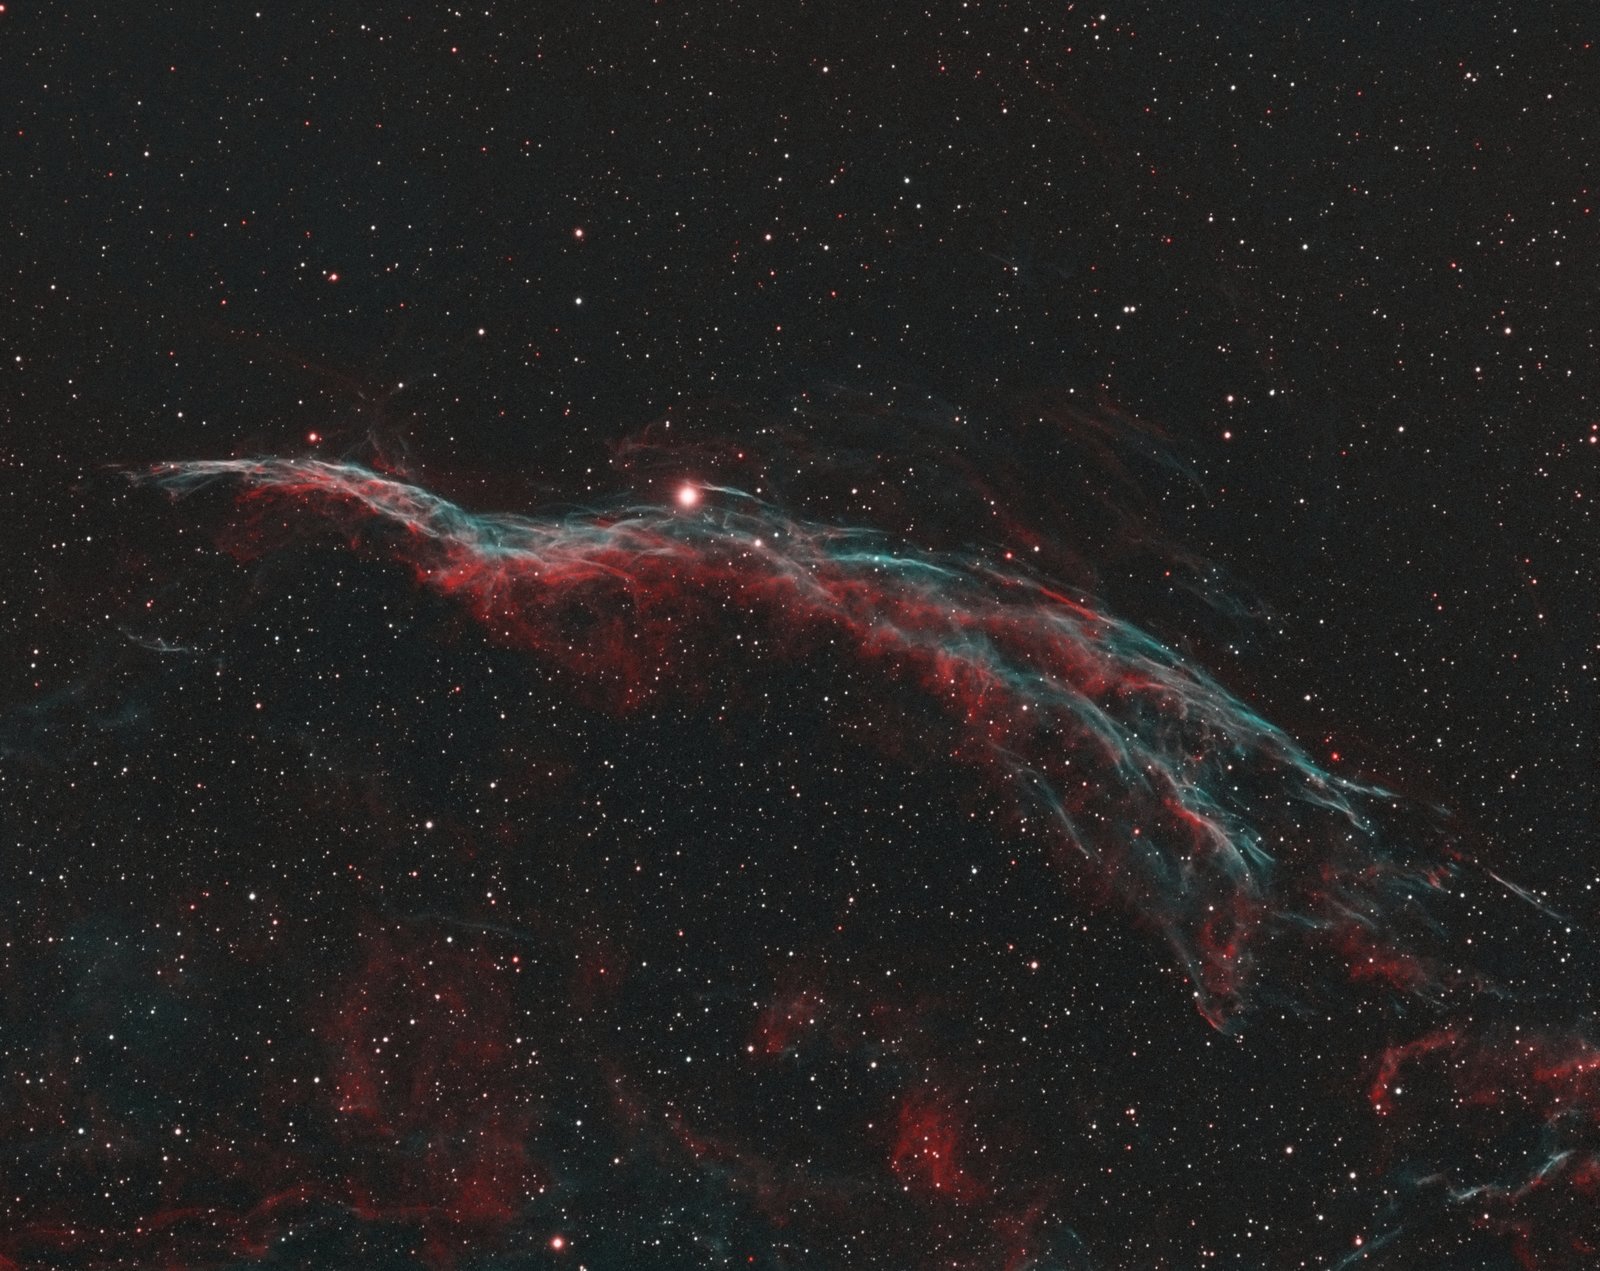 NGC6960-2.jpg.0259611059c5d9a84d1218afa334c737.thumb.jpg.30efbf45cc8a062eed37aaecda73a55d.jpg